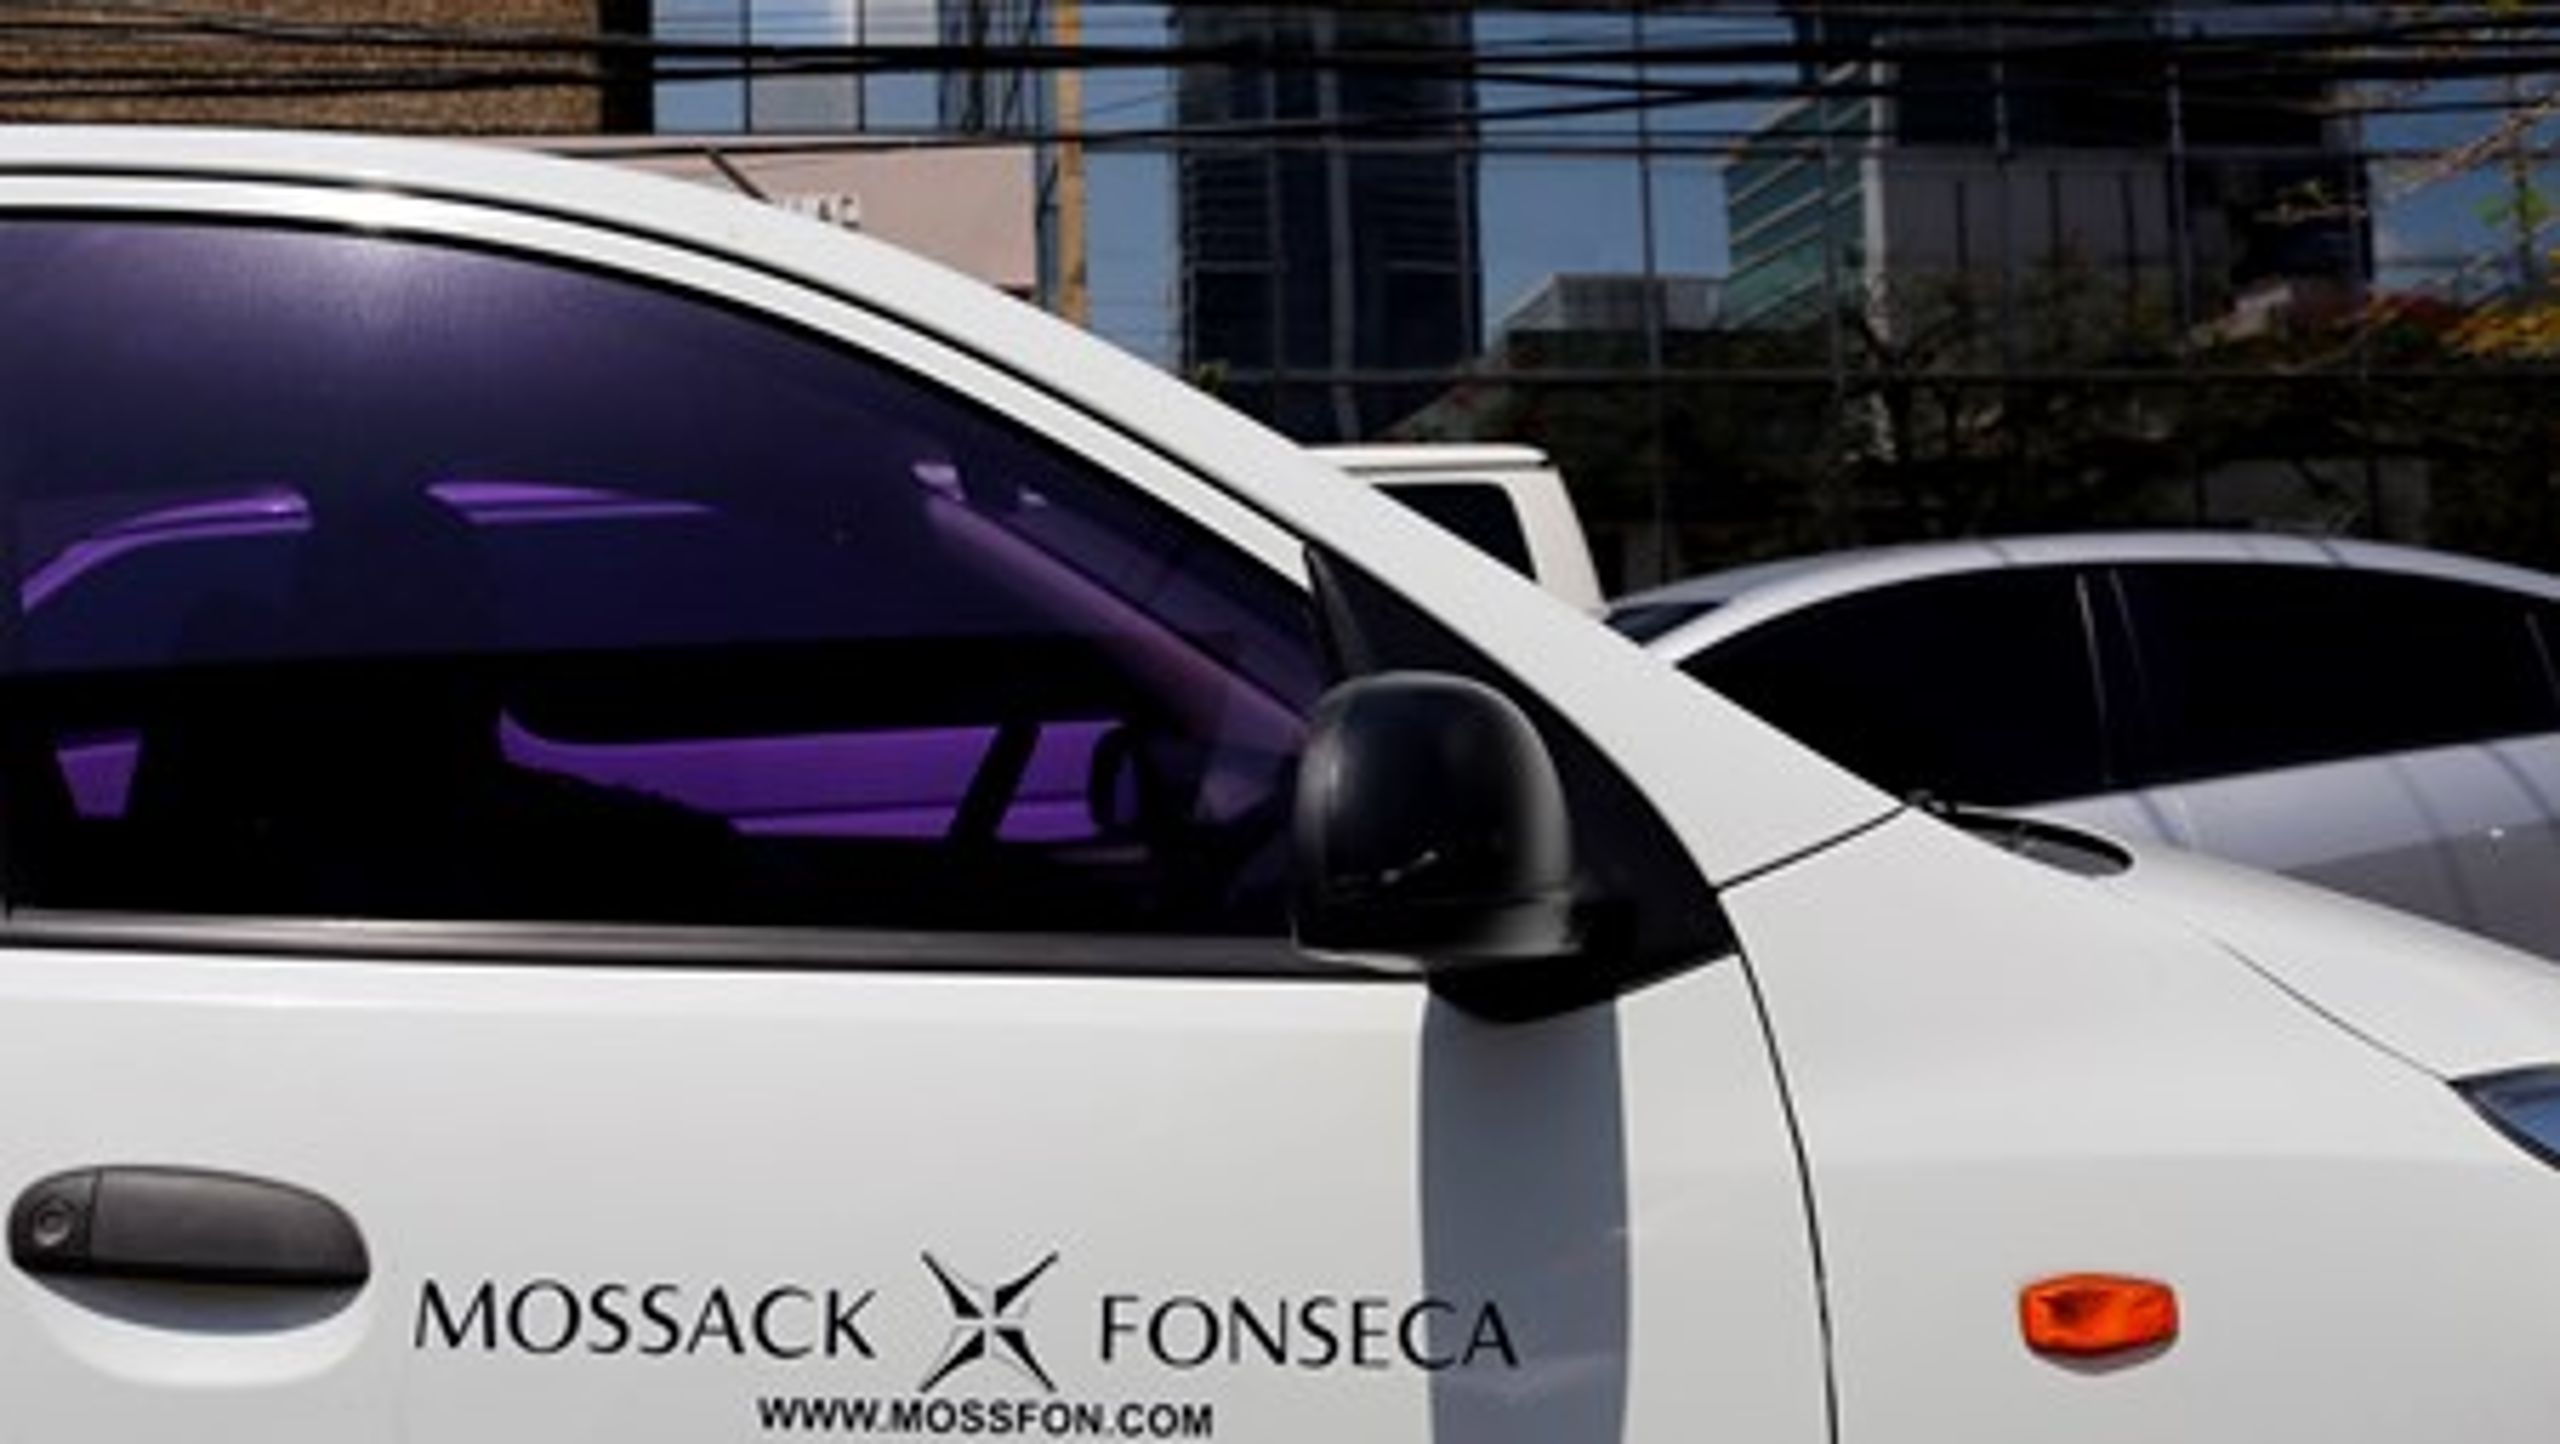 11,5 millioner dokumenter fra den mellemamerikanske advokatvirksomhed Mossack Fonseca er blevet lækket og viser, at en lang række af banker og virksomheder er involveret i skattely i Panama